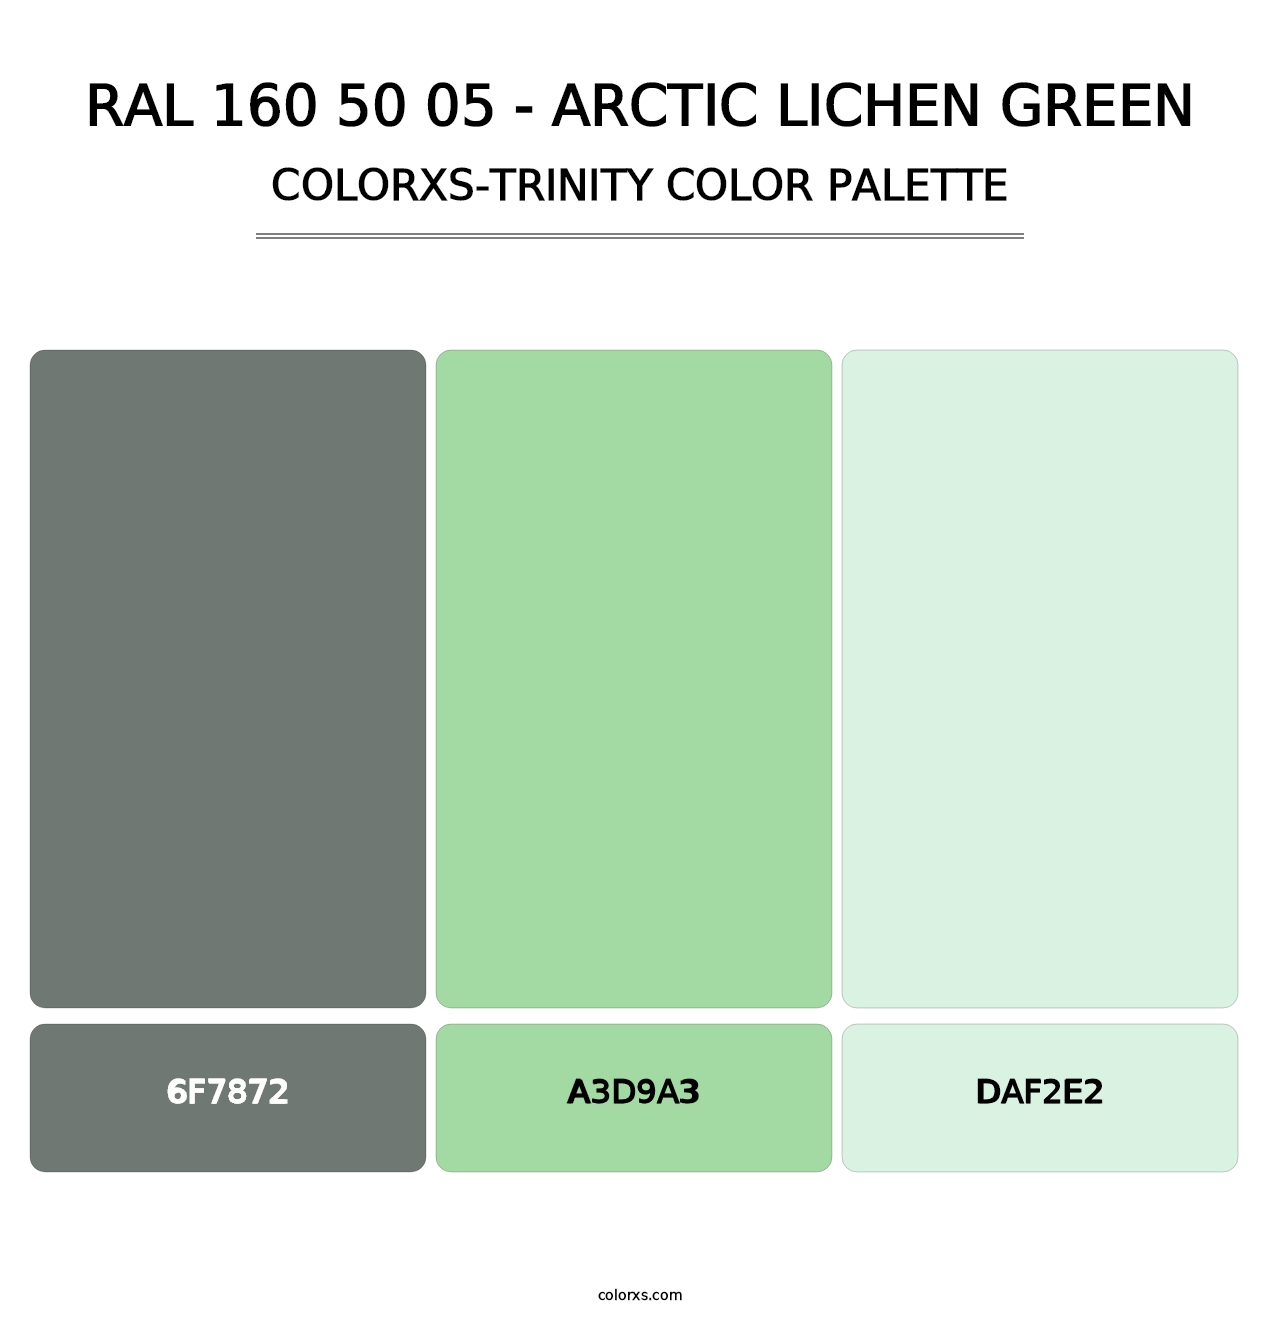 RAL 160 50 05 - Arctic Lichen Green - Colorxs Trinity Palette